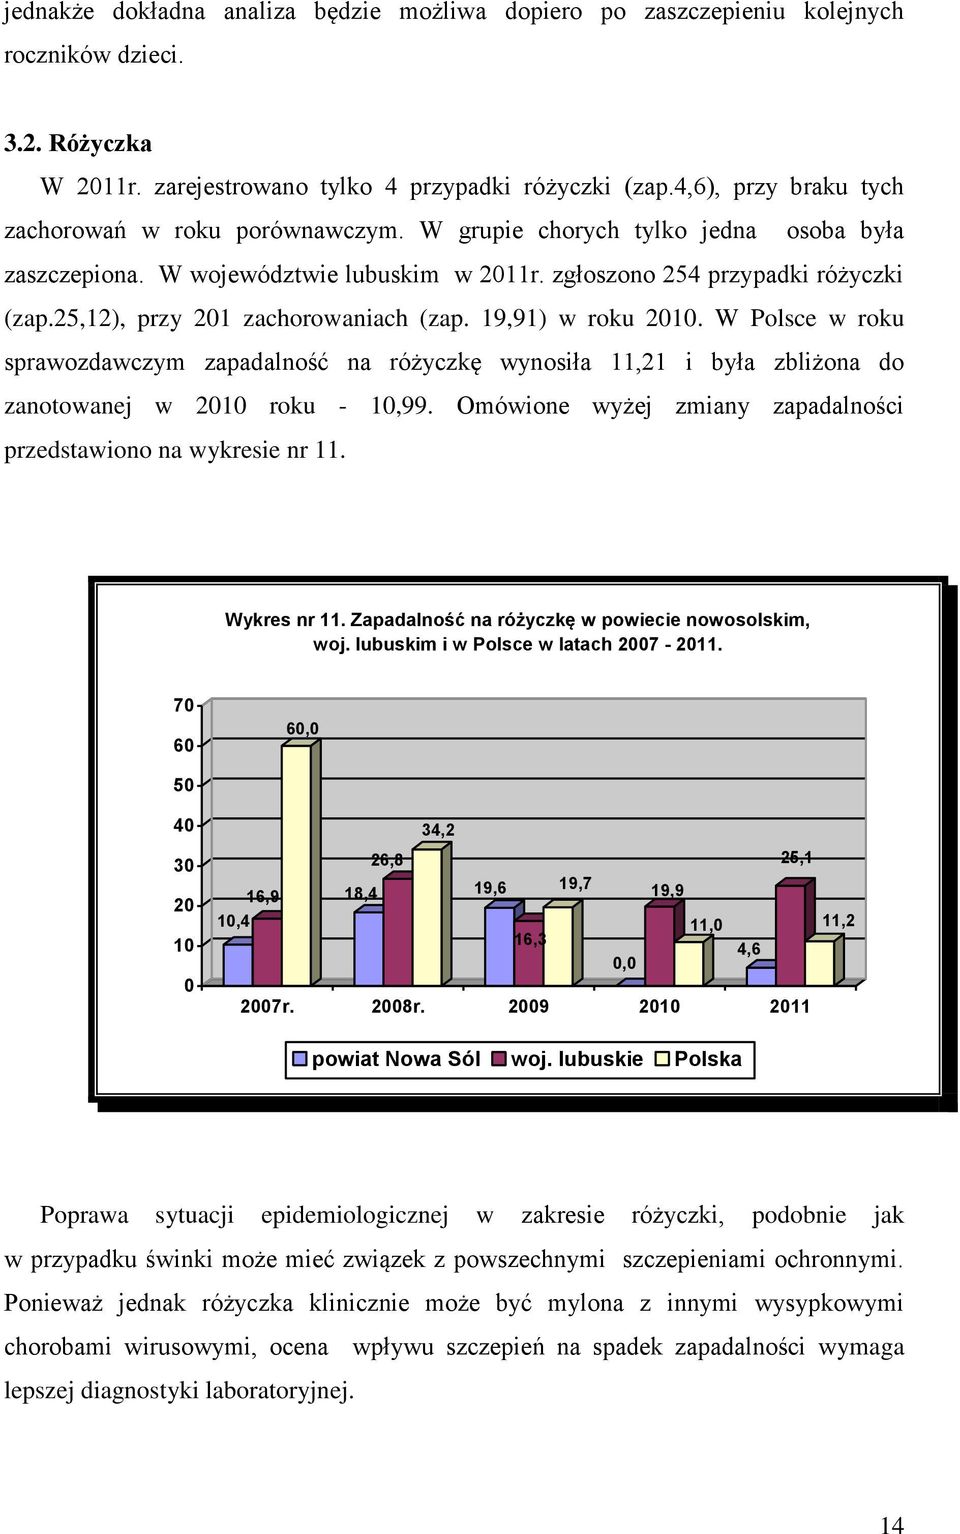 25,12), przy 201 zachorowaniach (zap. 19,91) w roku 2010. W Polsce w roku sprawozdawczym zapadalność na różyczkę wynosiła 11,21 i była zbliżona do zanotowanej w 2010 roku - 10,99.